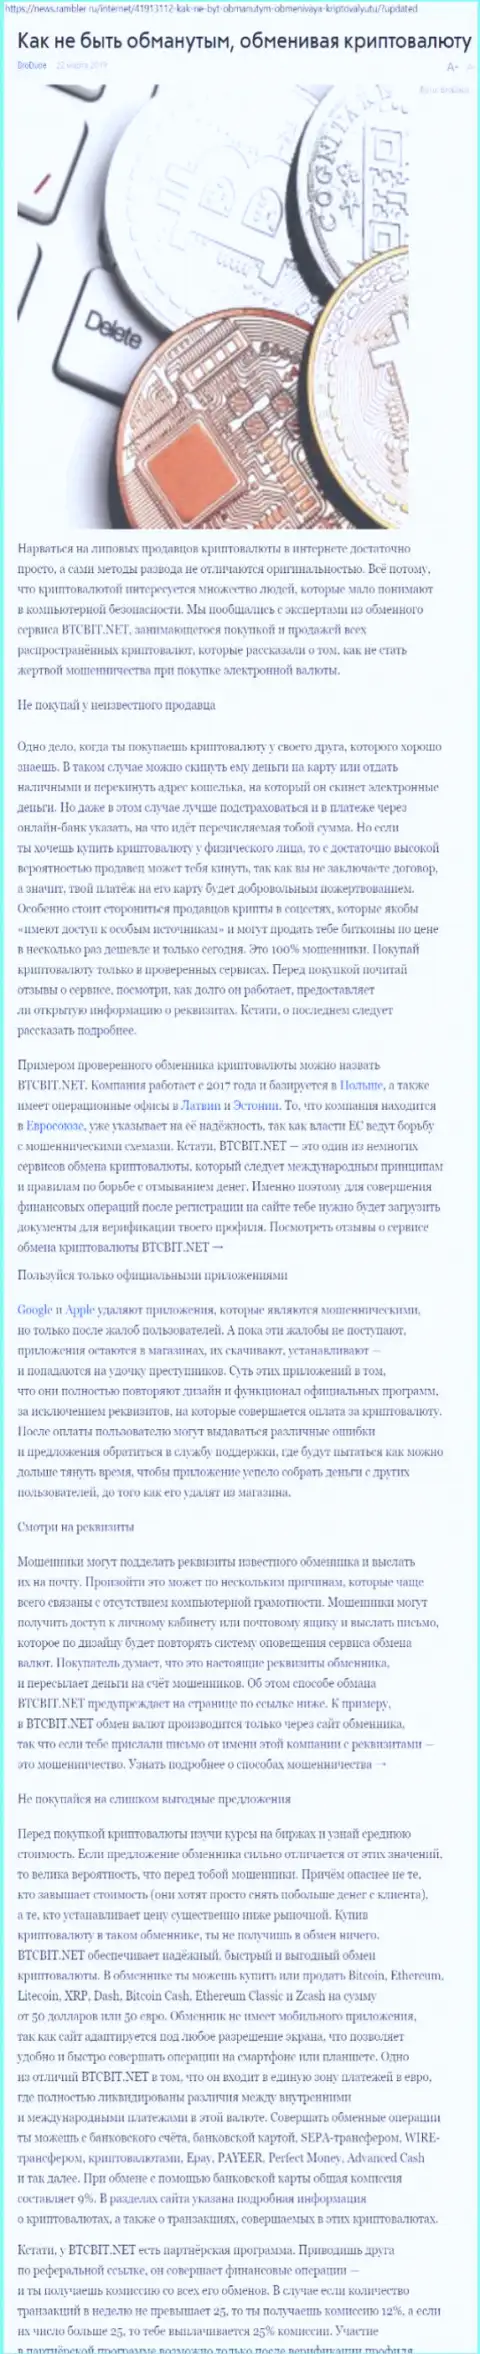 Публикация об online обменнике BTCBit на news rambler ru